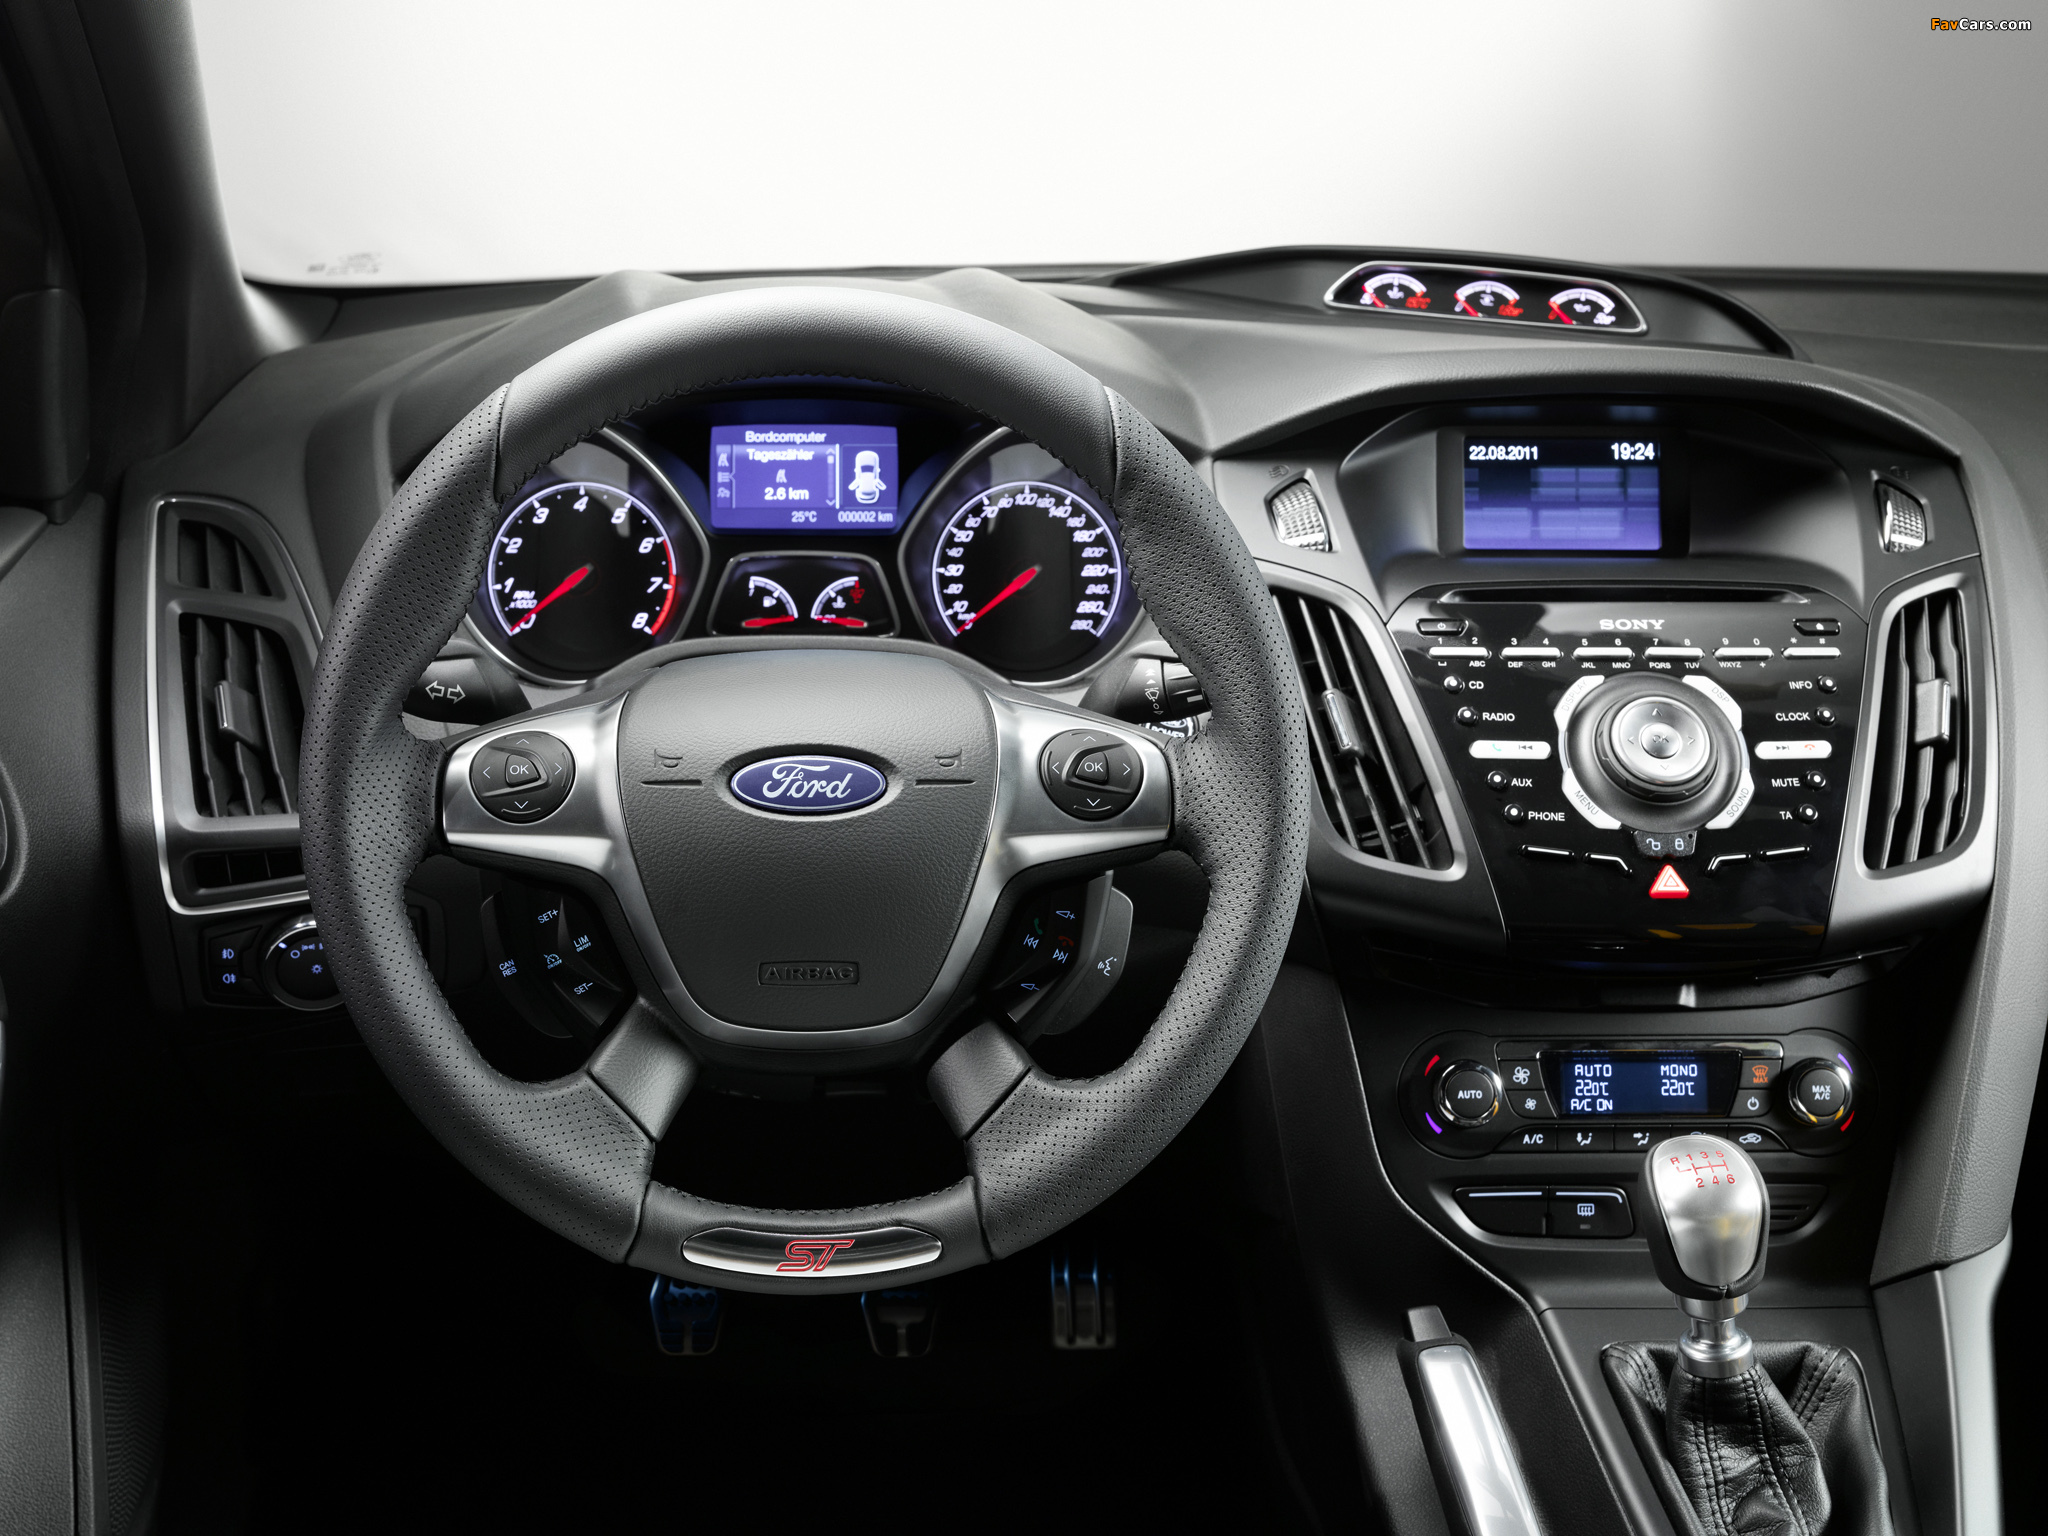 Ford Focus ST 2012 photos (2048 x 1536)